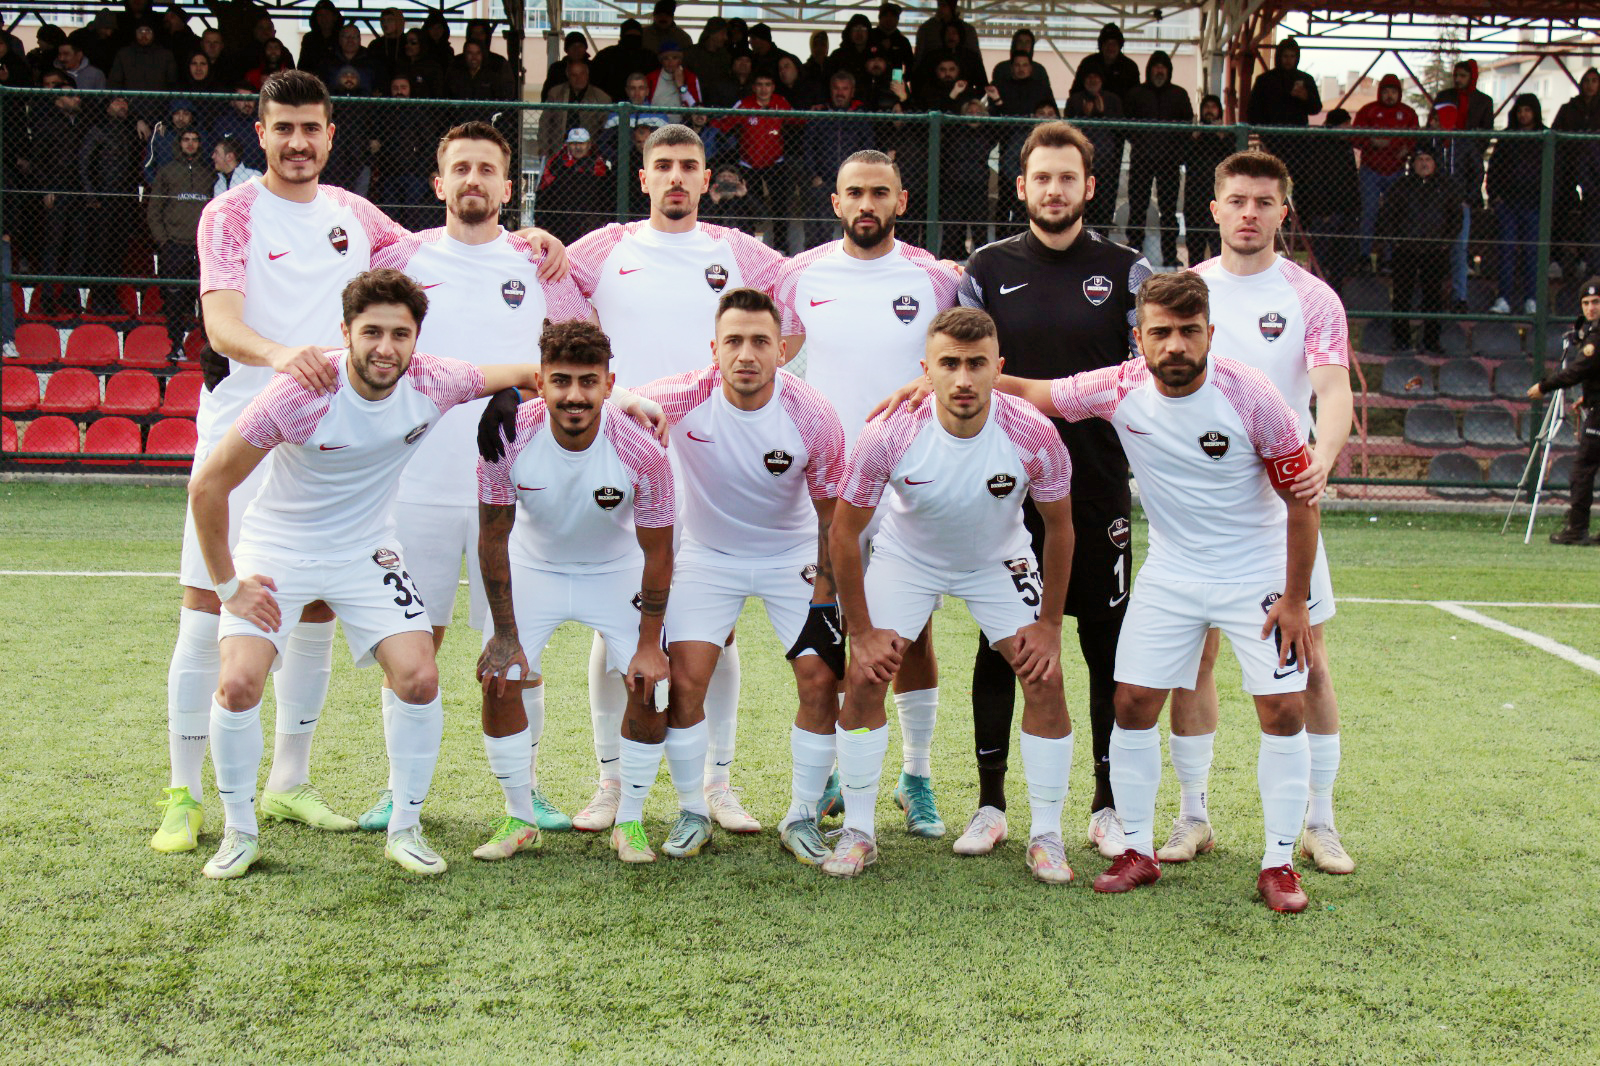 Yozgat Belediyesi Bozokspor 2 Murat 2020 Gençspor 0